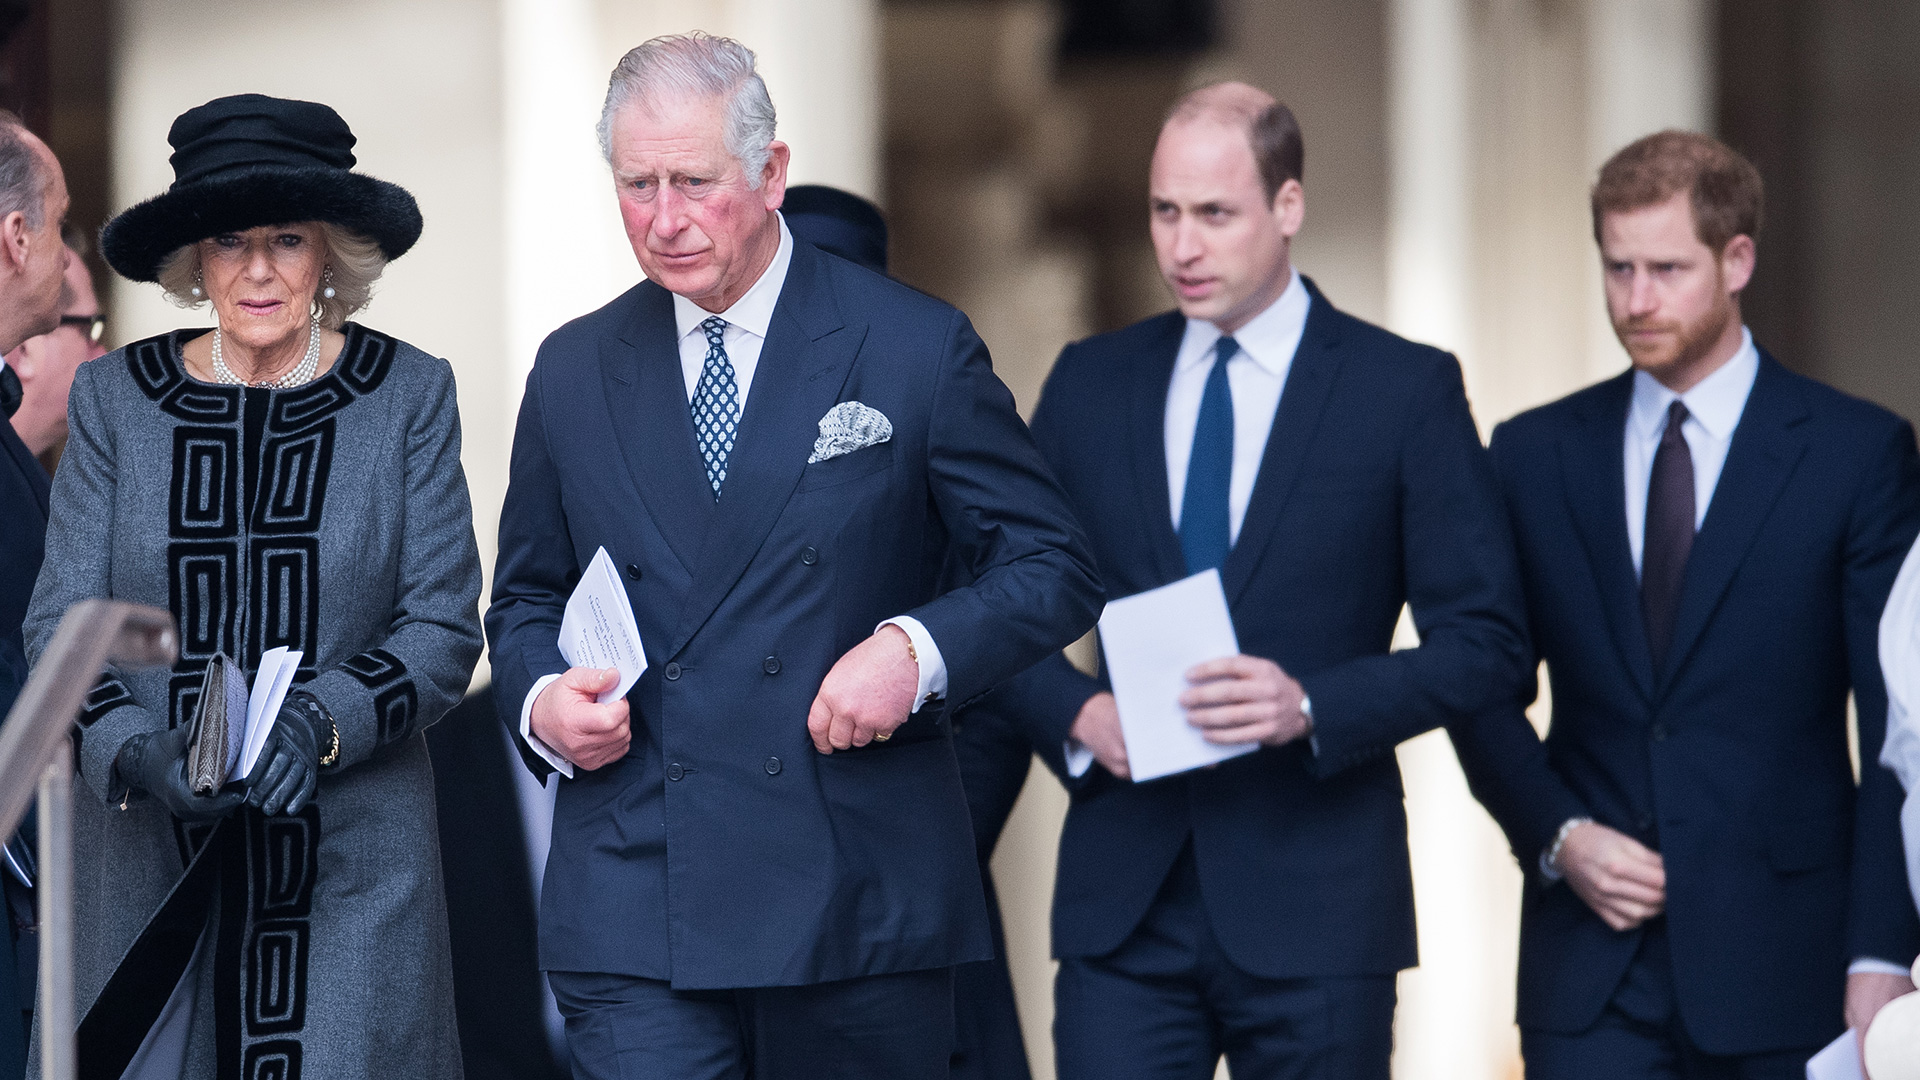 El príncipe Carlos, la duquesa de Cornualles, el príncipe William y el príncipe Harry en Londres, Inglaterra (Foto de Samir Hussein/Samir Hussein/WireImage)